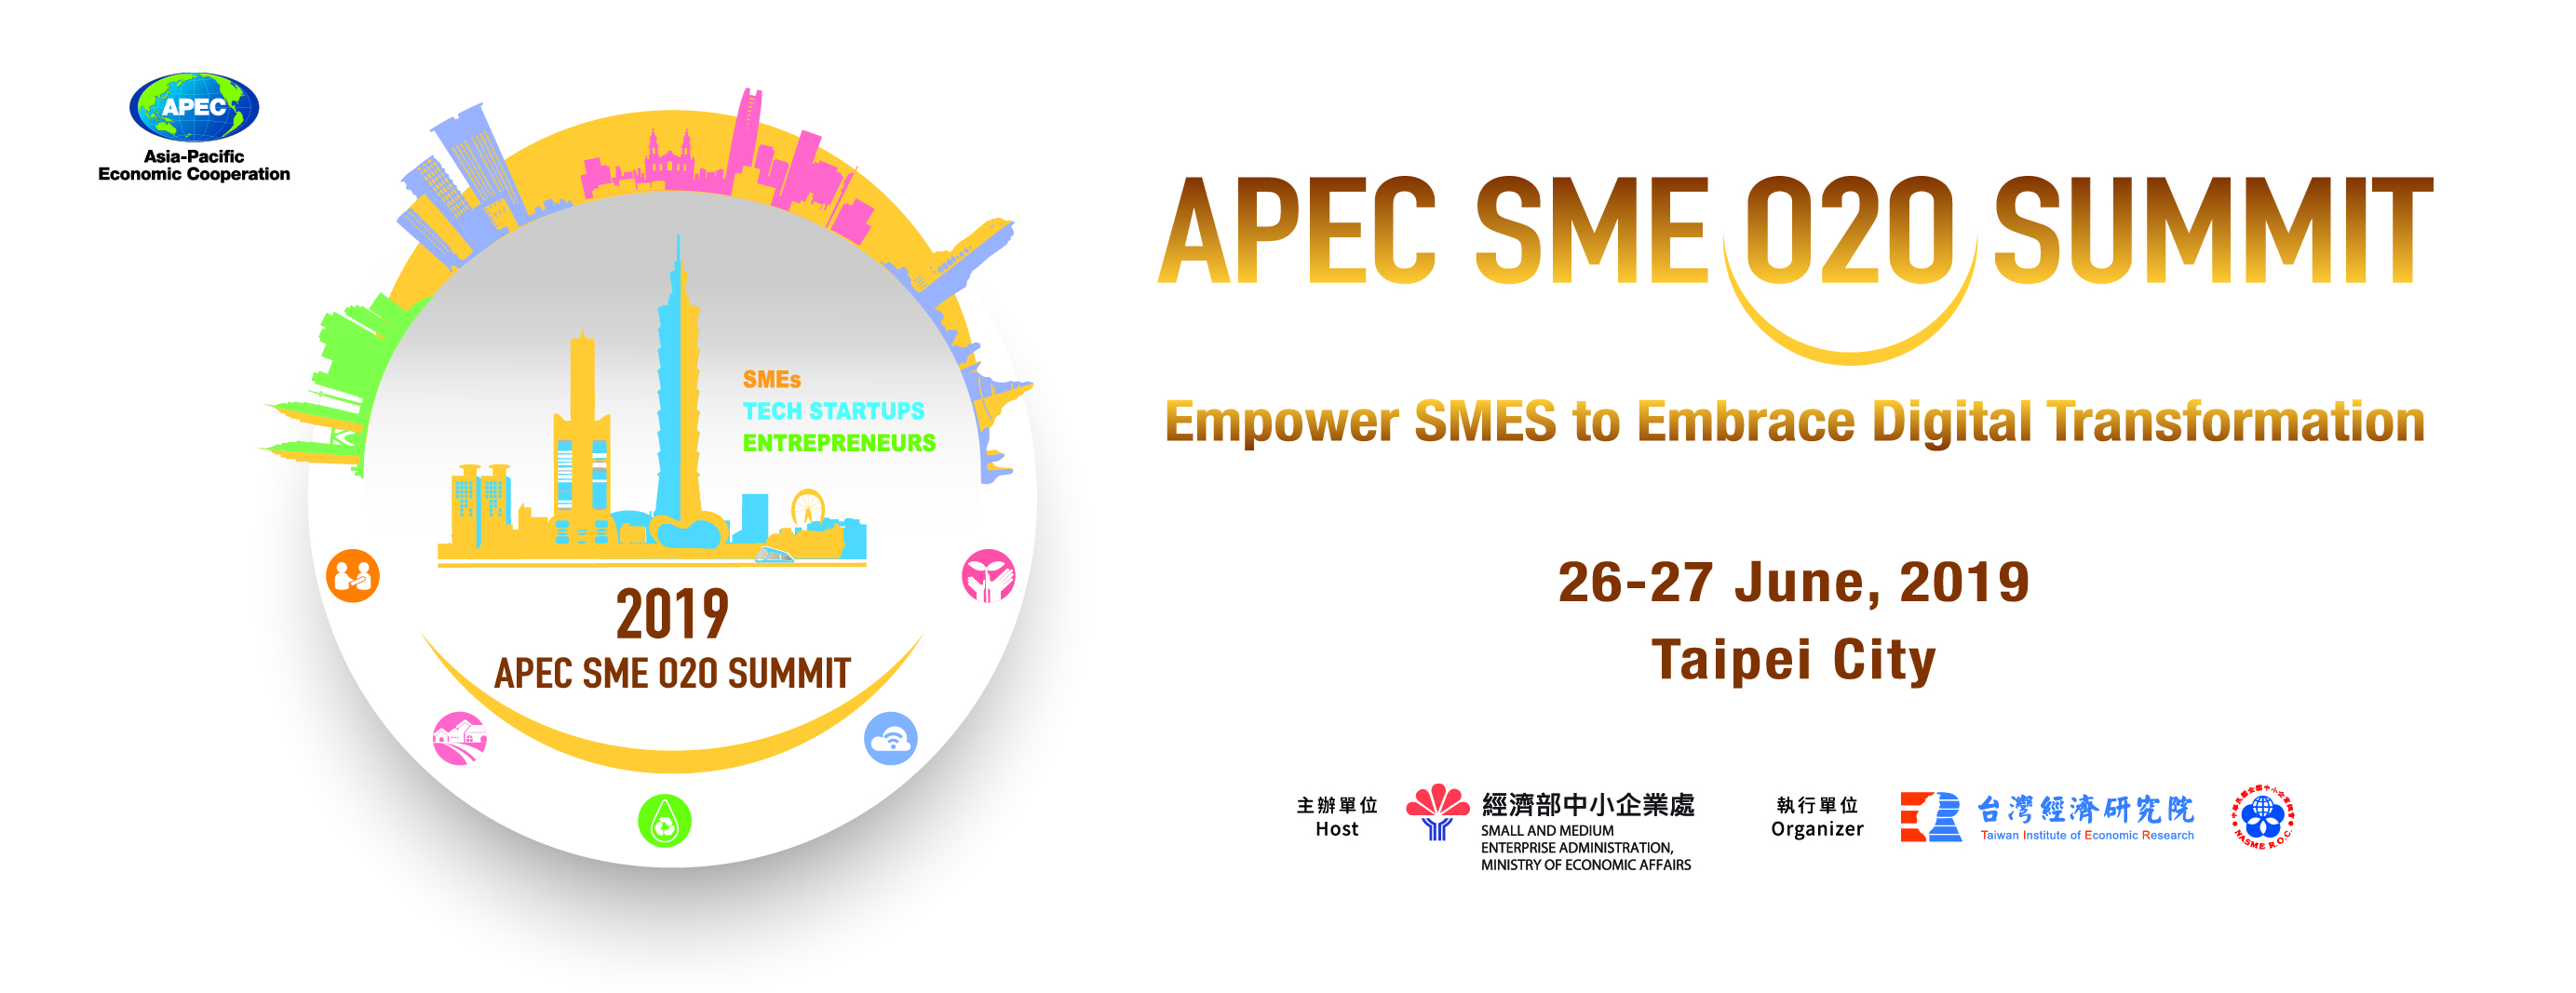 APEC O2O Summit_Taipei City